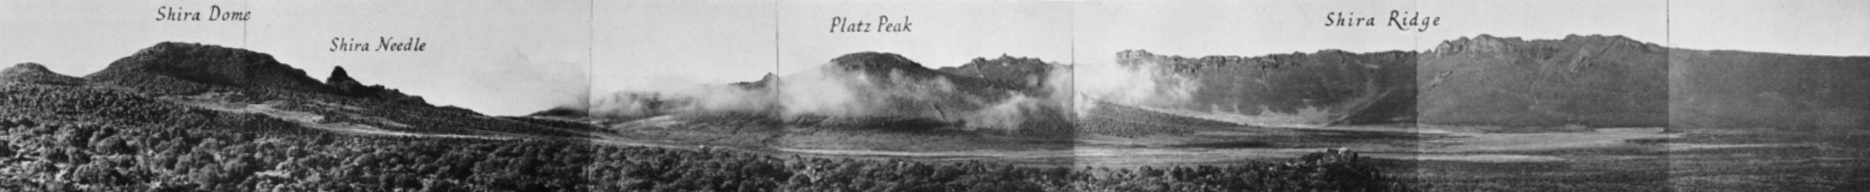 Das Shira Platau 1948.Mit dem zentralem Platzkegel - hier als Platz Peak bezeichnet. Ein Panoramabild aus Einzelaufnahmen von Georg Salt aus dem jahr 1948. [3]